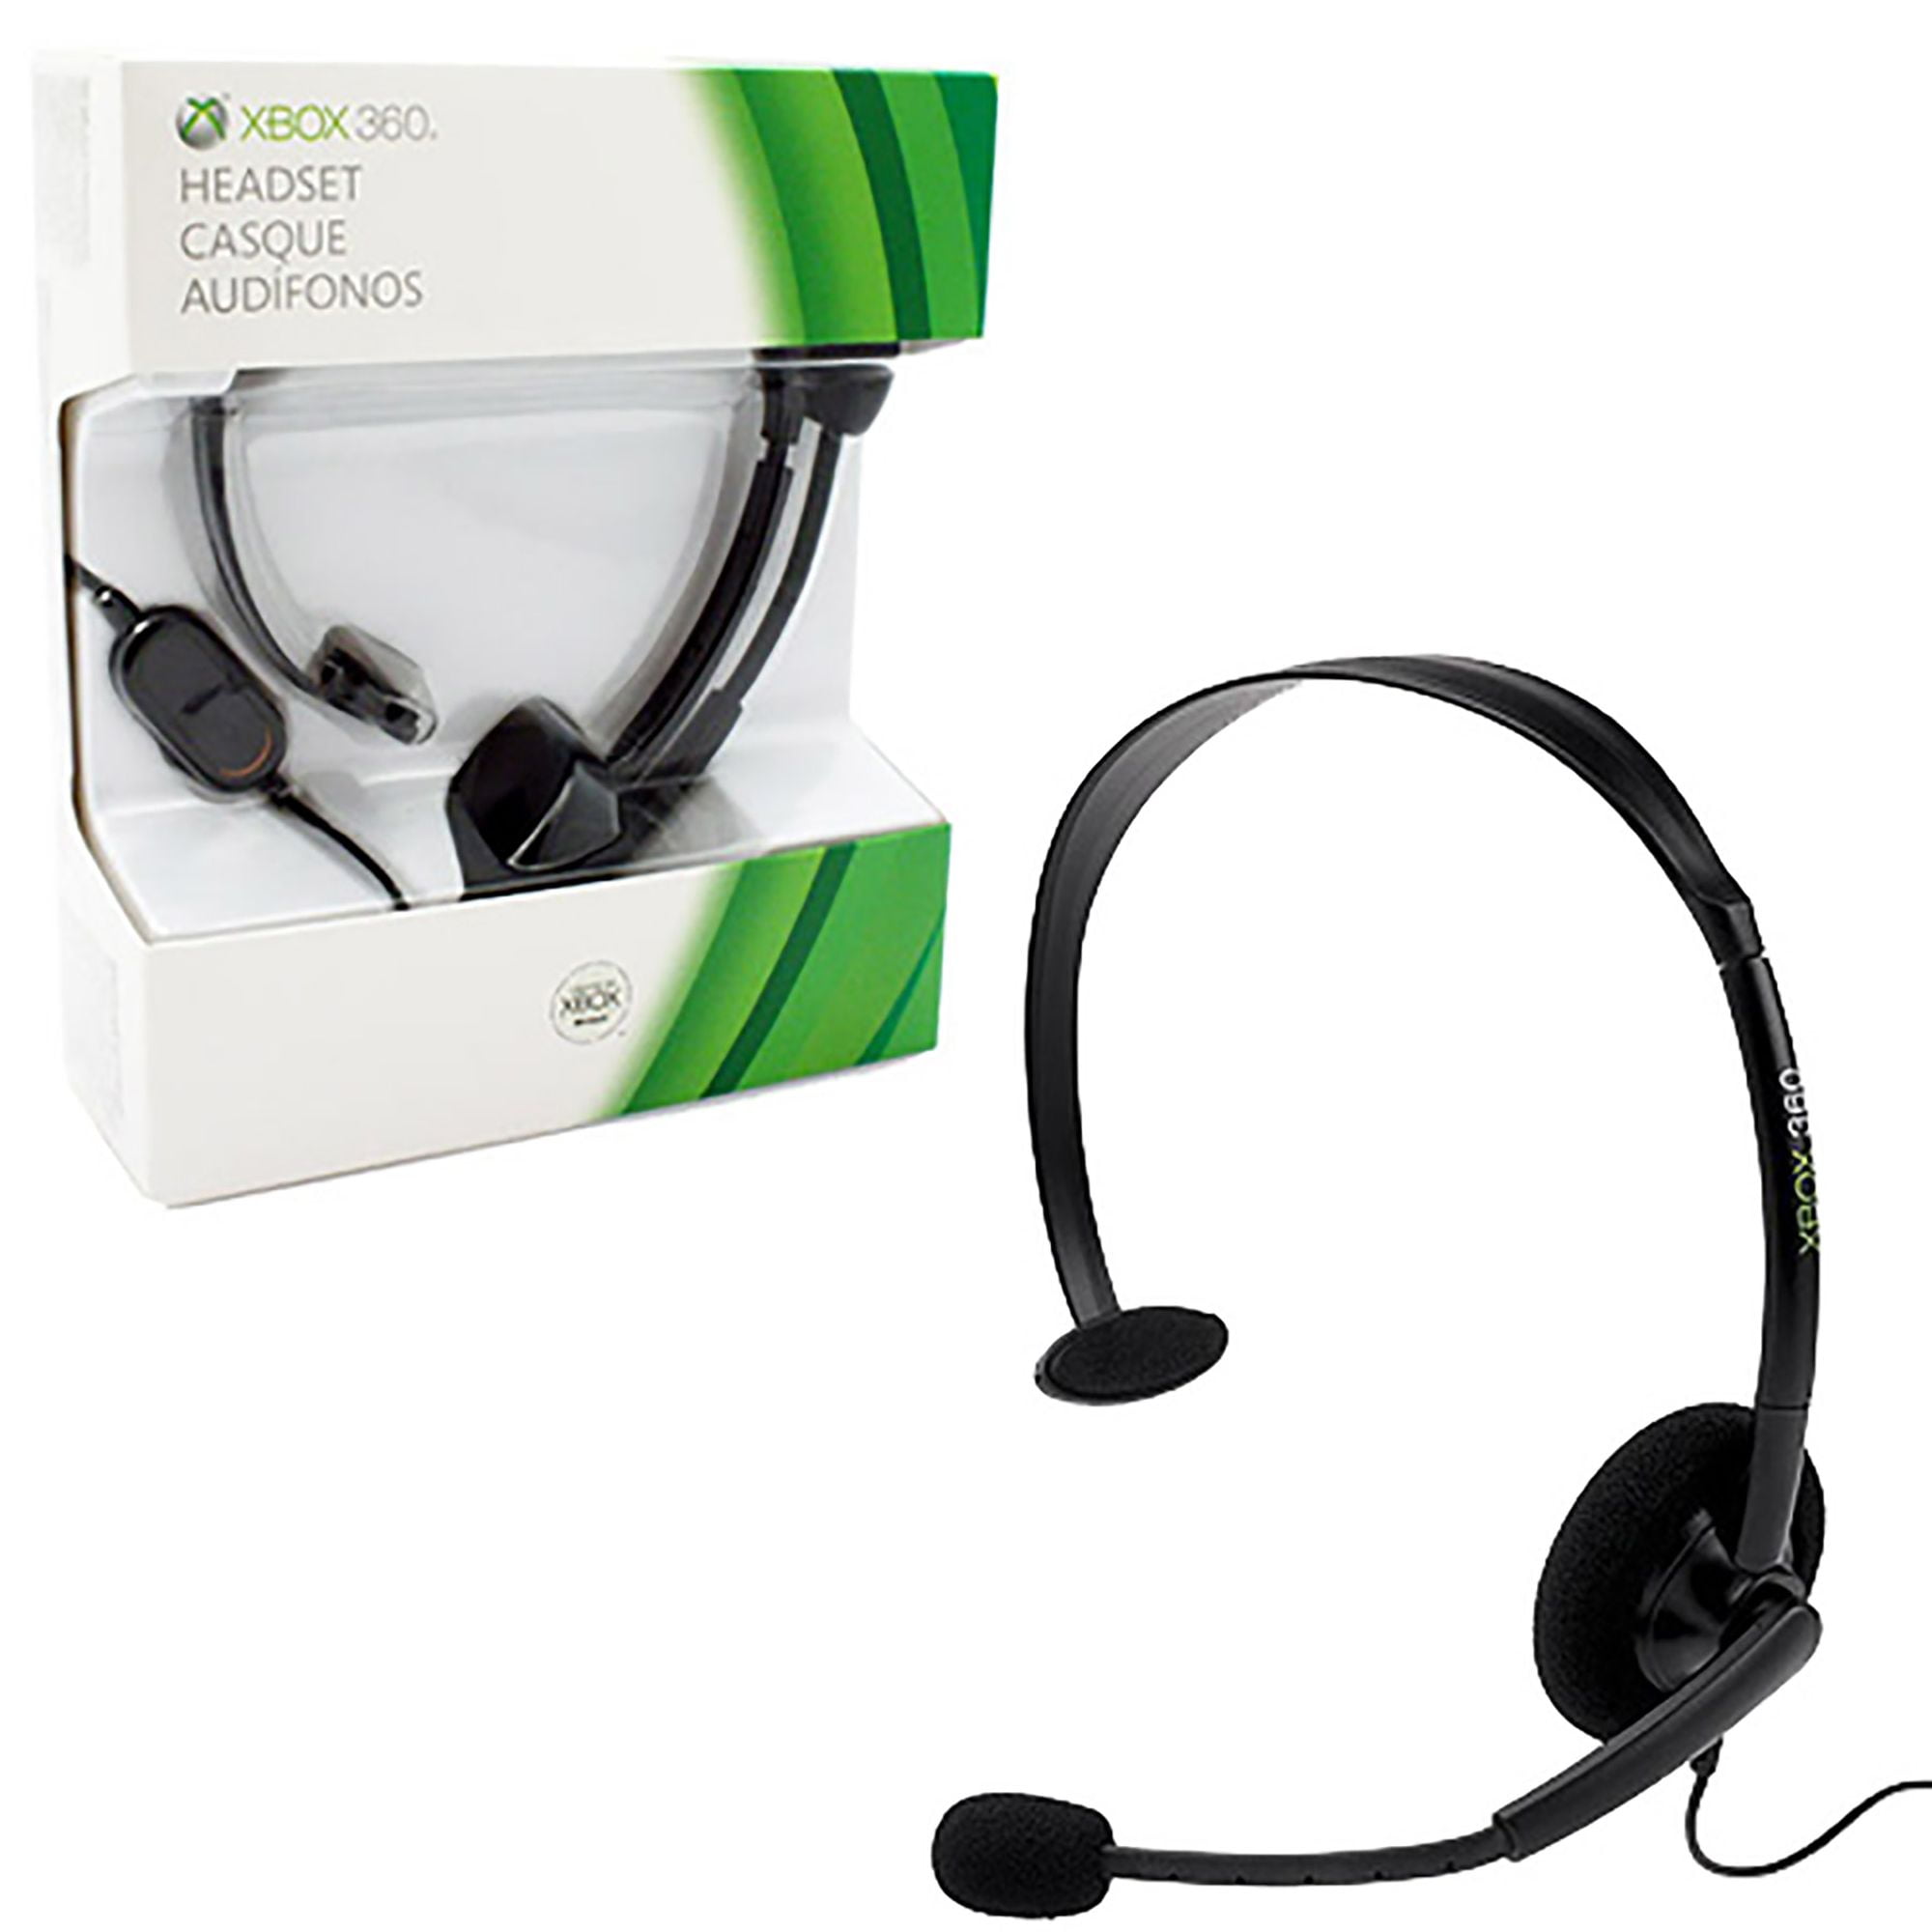 Купить наушники xbox с микрофоном. Xbox 360 Headset. Гарнитура Microsoft Xbox 360. Гарнитура для Xbox 360 c микрофоном. Наушники Xbox 360 Headset.